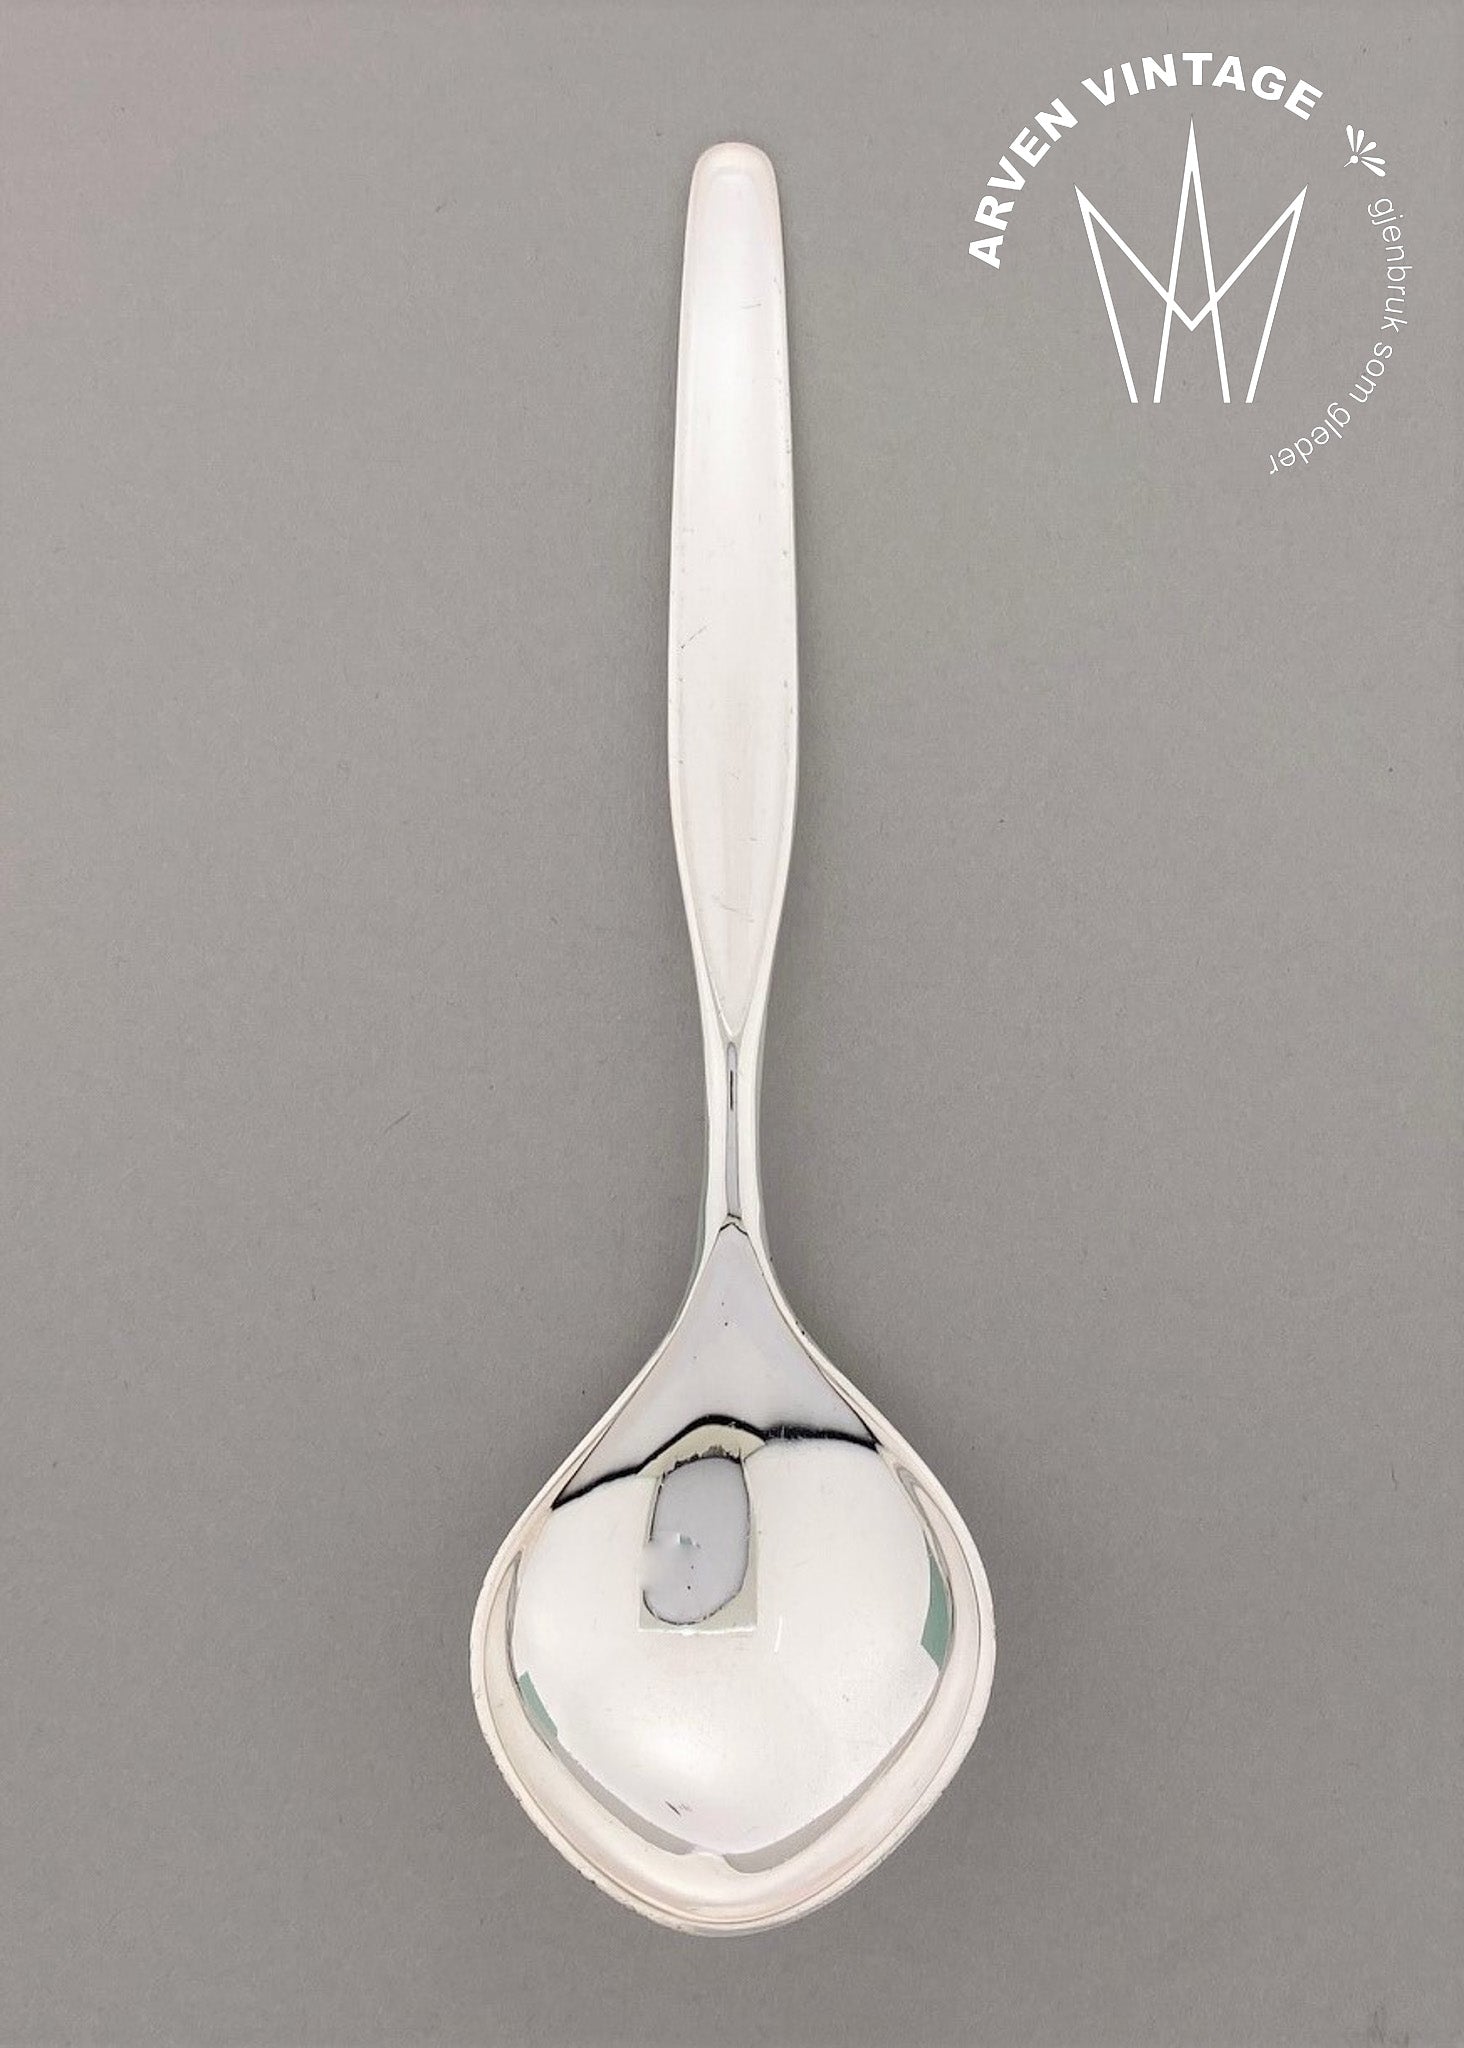 Vintage Aase jam spoon